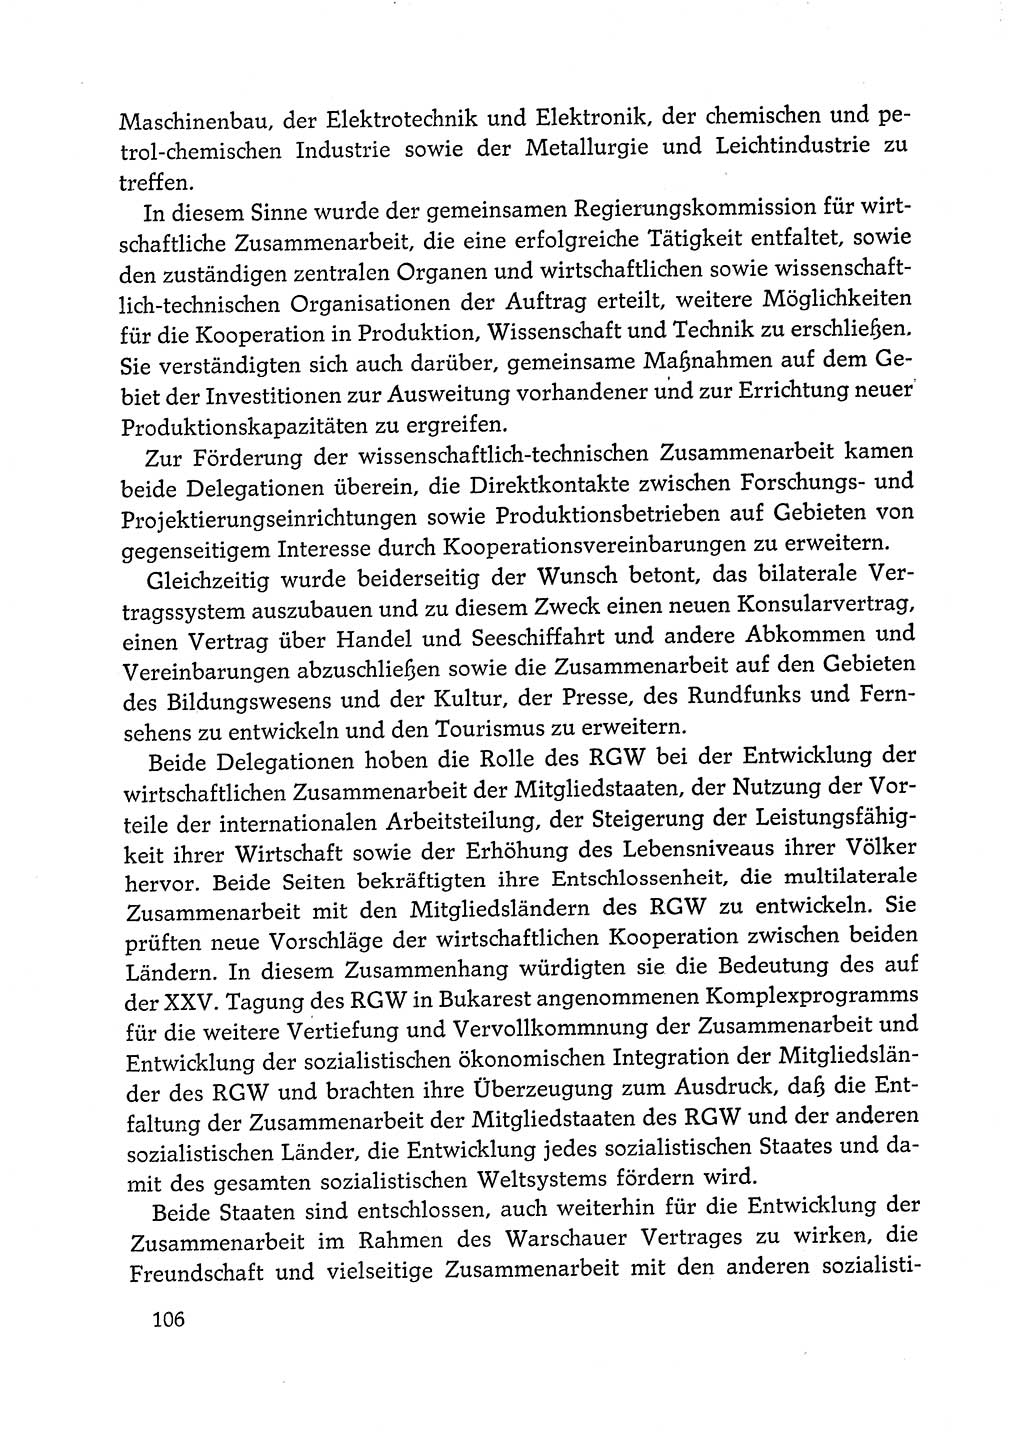 Dokumente der Sozialistischen Einheitspartei Deutschlands (SED) [Deutsche Demokratische Republik (DDR)] 1972-1973, Seite 106 (Dok. SED DDR 1972-1973, S. 106)